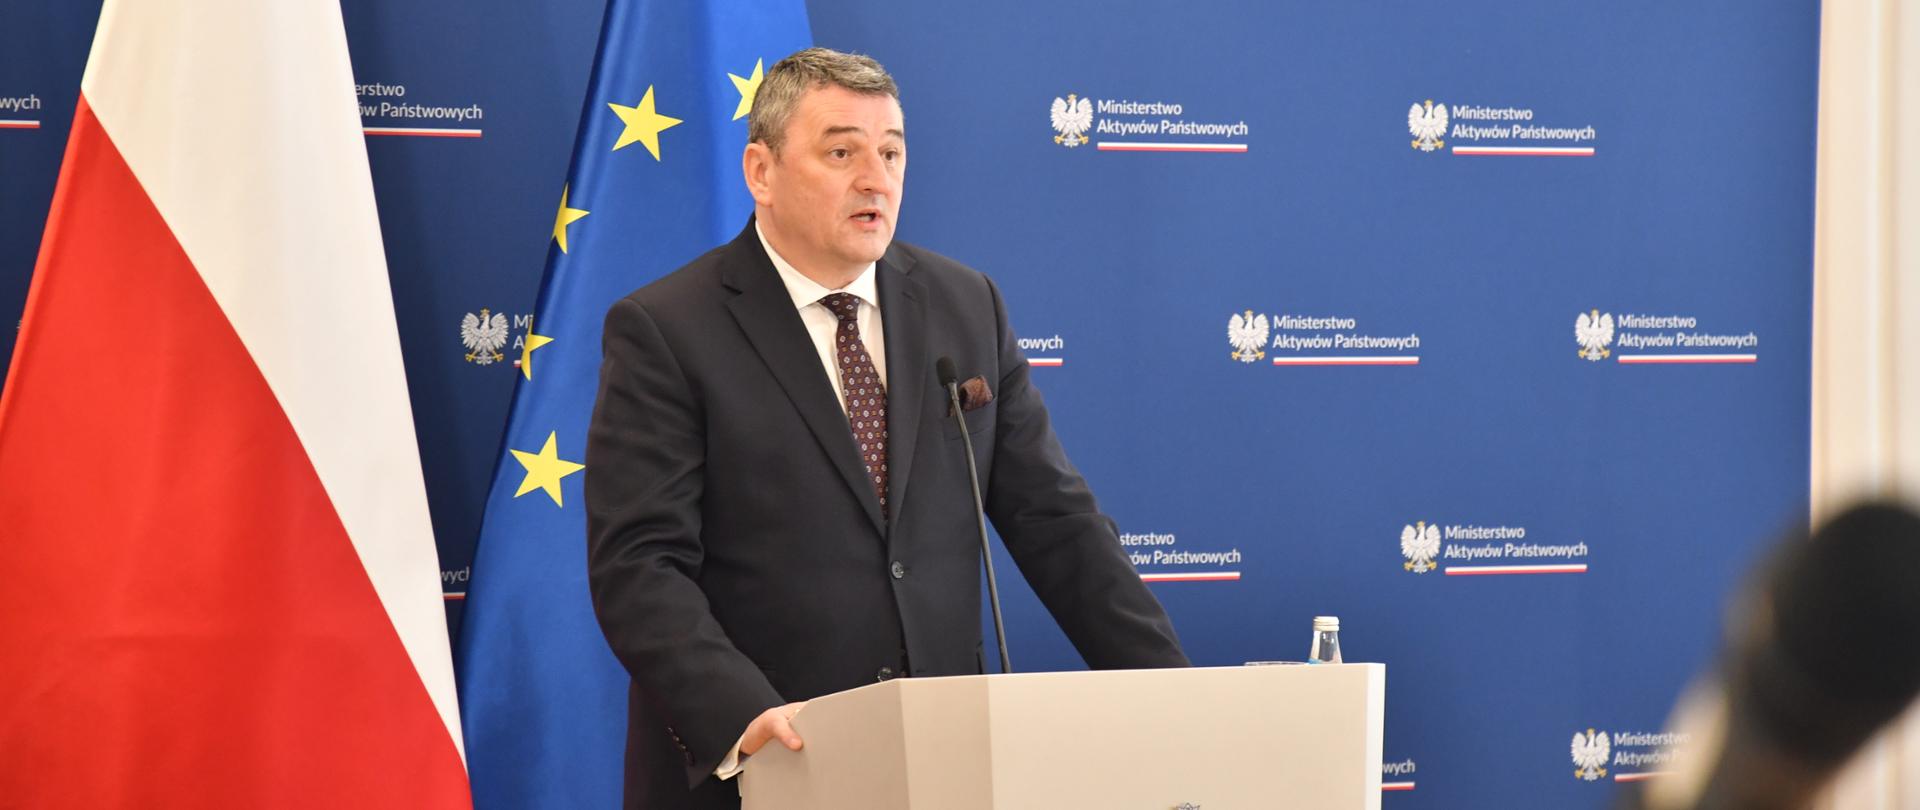 Wiceminister Marek Wesoły podczas konferencji